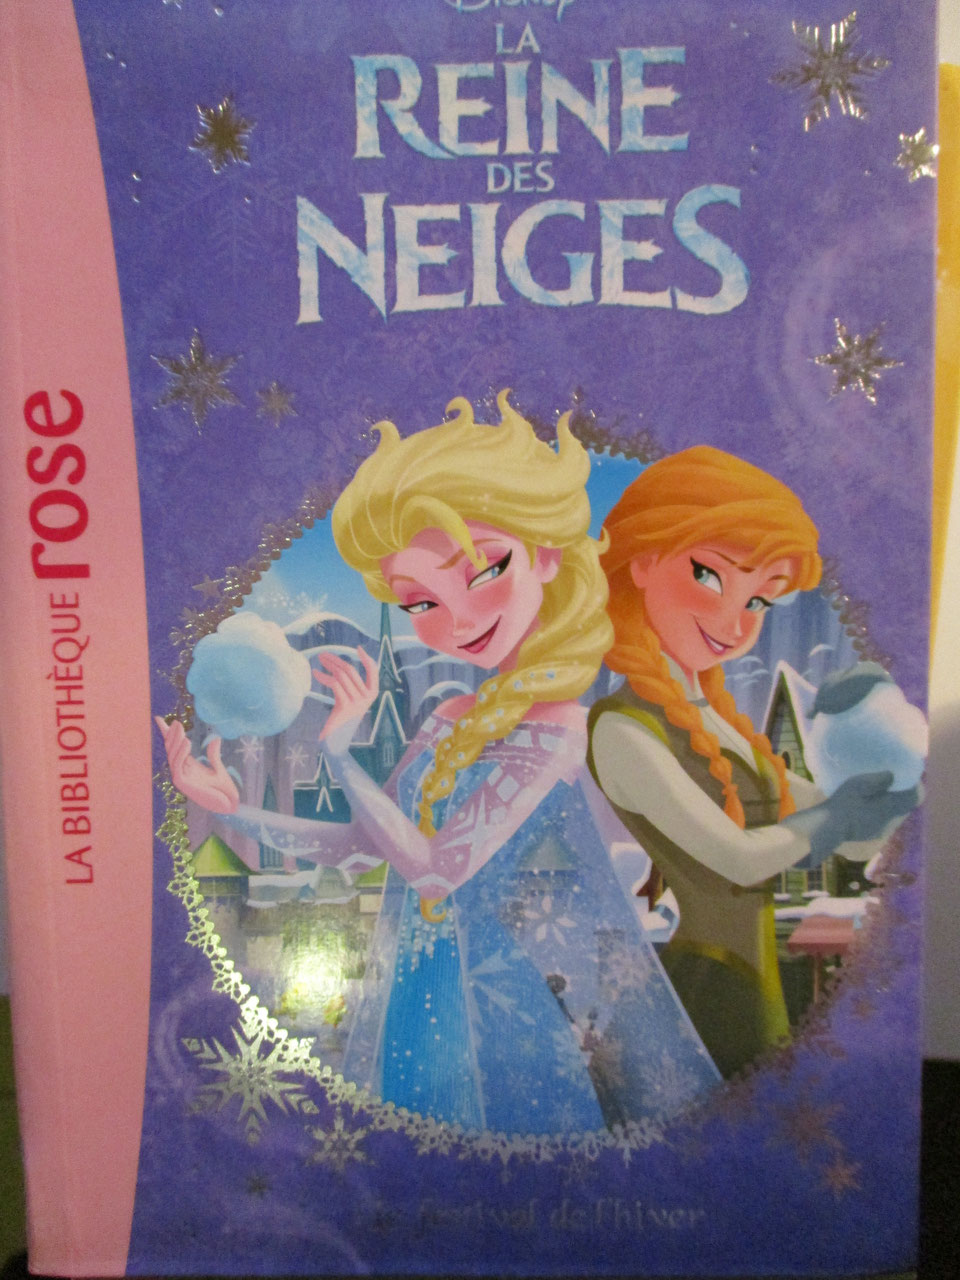 reine - [Litterature jeunesse] Les Livres de la reine des neiges 1 et 2 de la bibliothèque rose Image